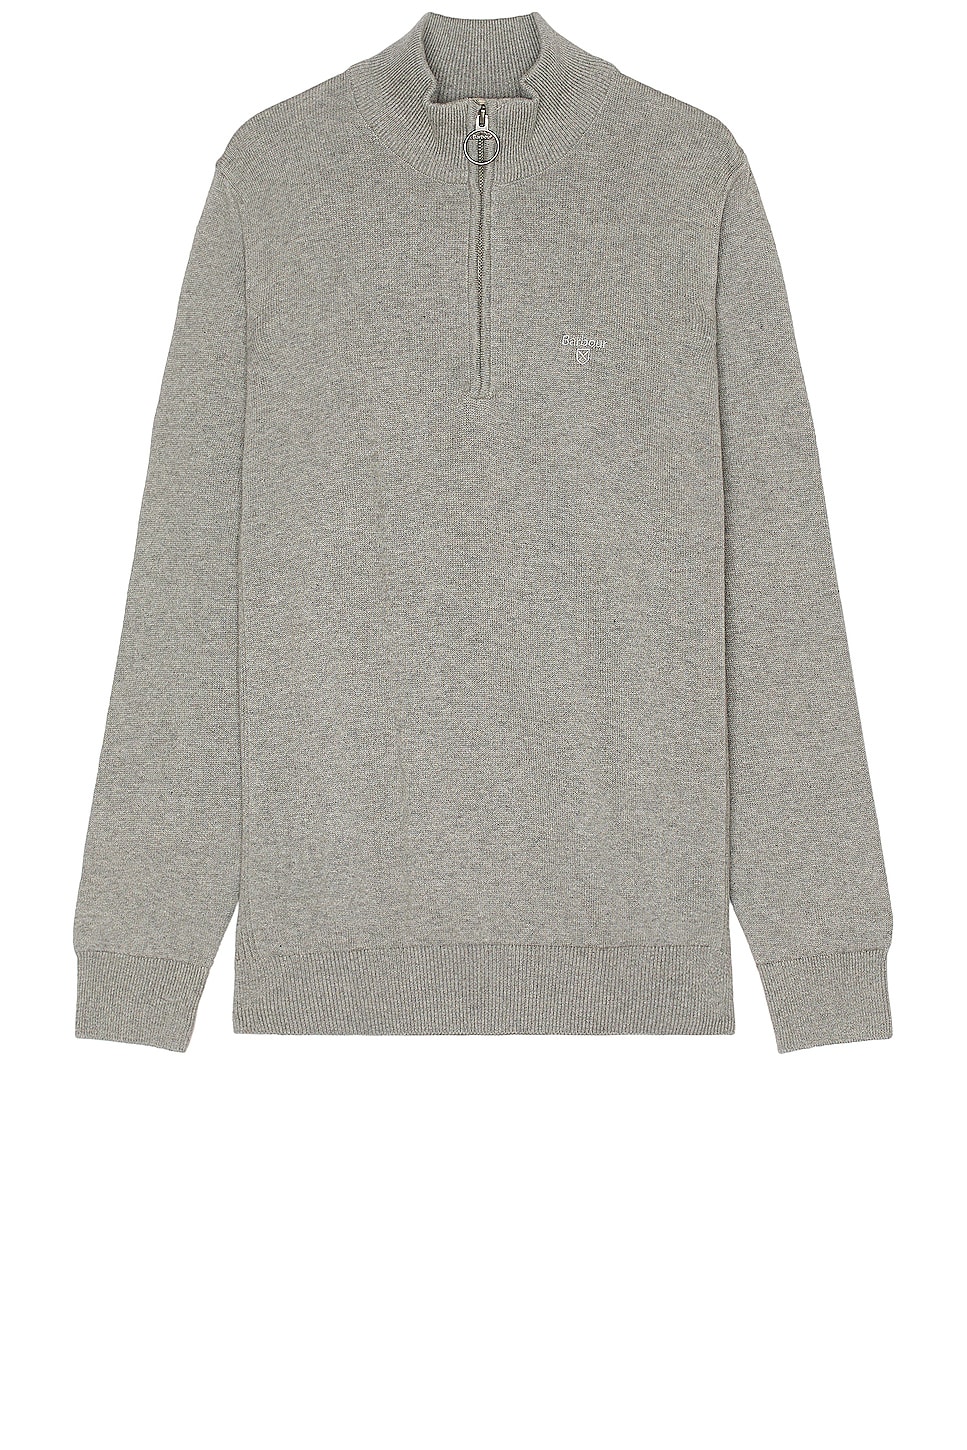 Image 1 of Barbour Half Zip Sweater in Grey